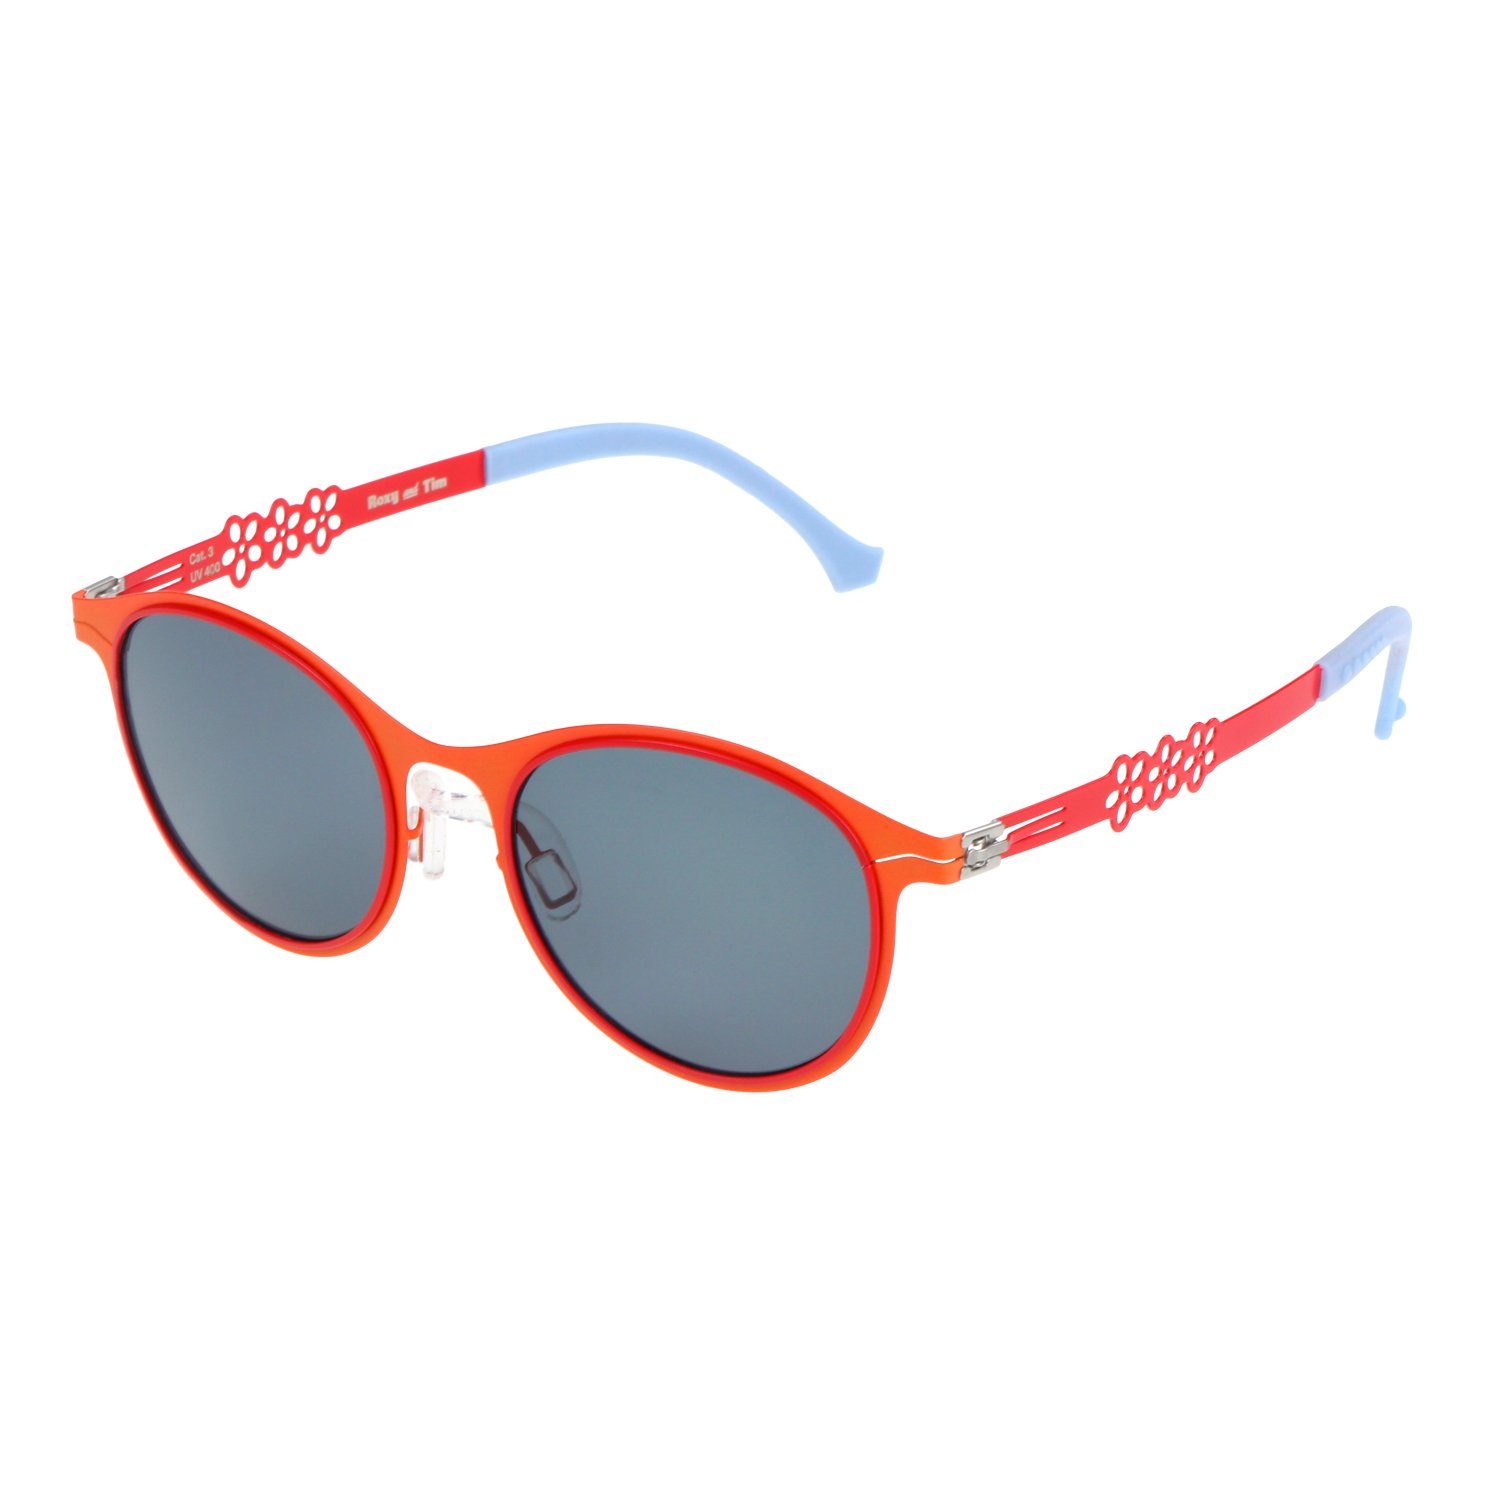 ActiveSol SUNGLASSES Sonnenbrille Kinder Sonnenbrille, Private Eyes, 3-8 Jahre pulverbeschichteter Metallrahmen, weiche Ohrenschoner, leicht 15g Rot - Blossom